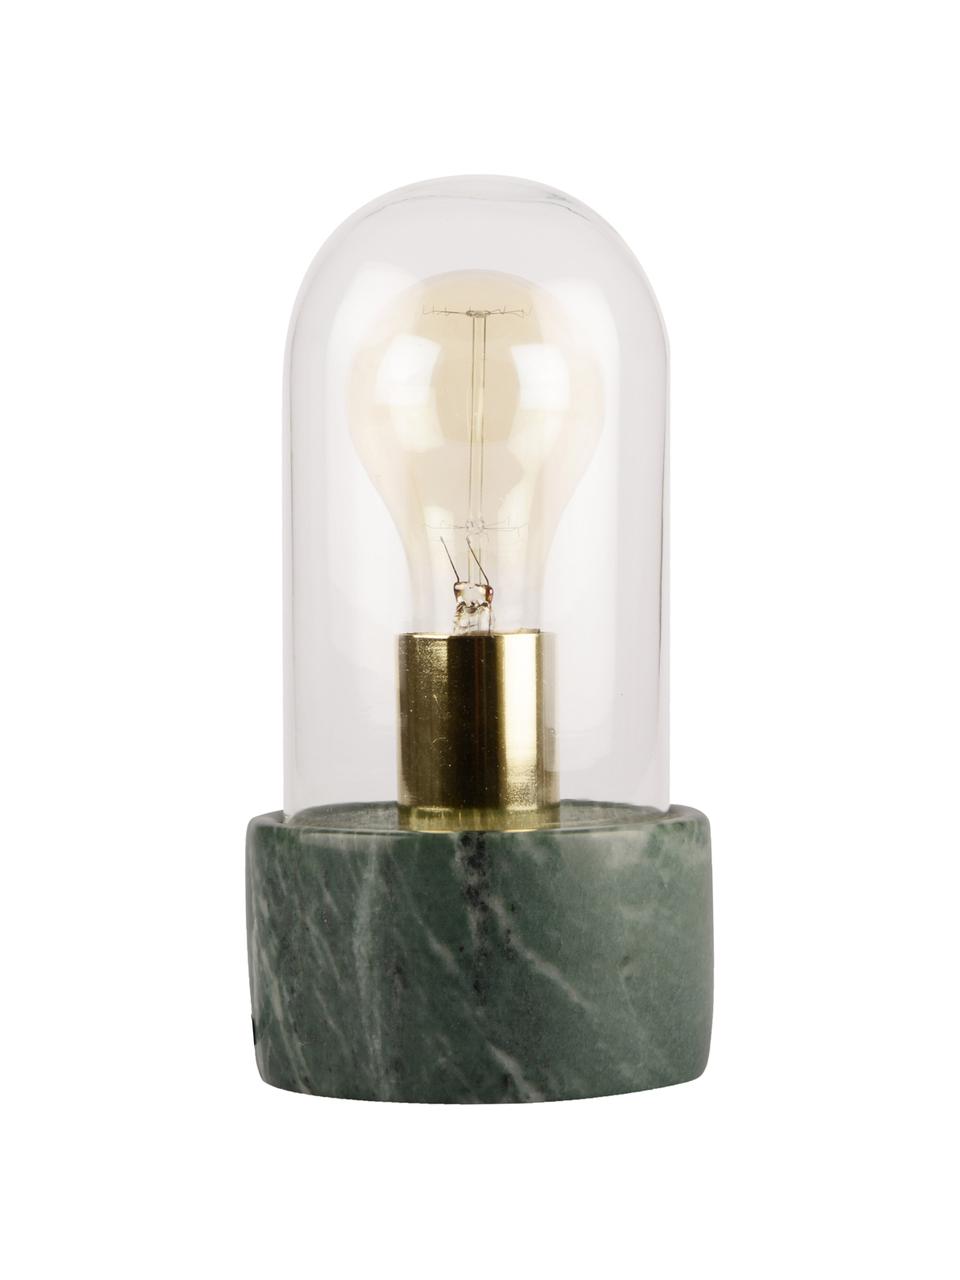 Tafellamp Marble, Voetstuk: marmer, Stolp: glas, Fitting: metaal, Voetstuk: gemarmerd groen, Stolp: transparant Fitting: goudkleurig, Ø 12 x H 24 cm